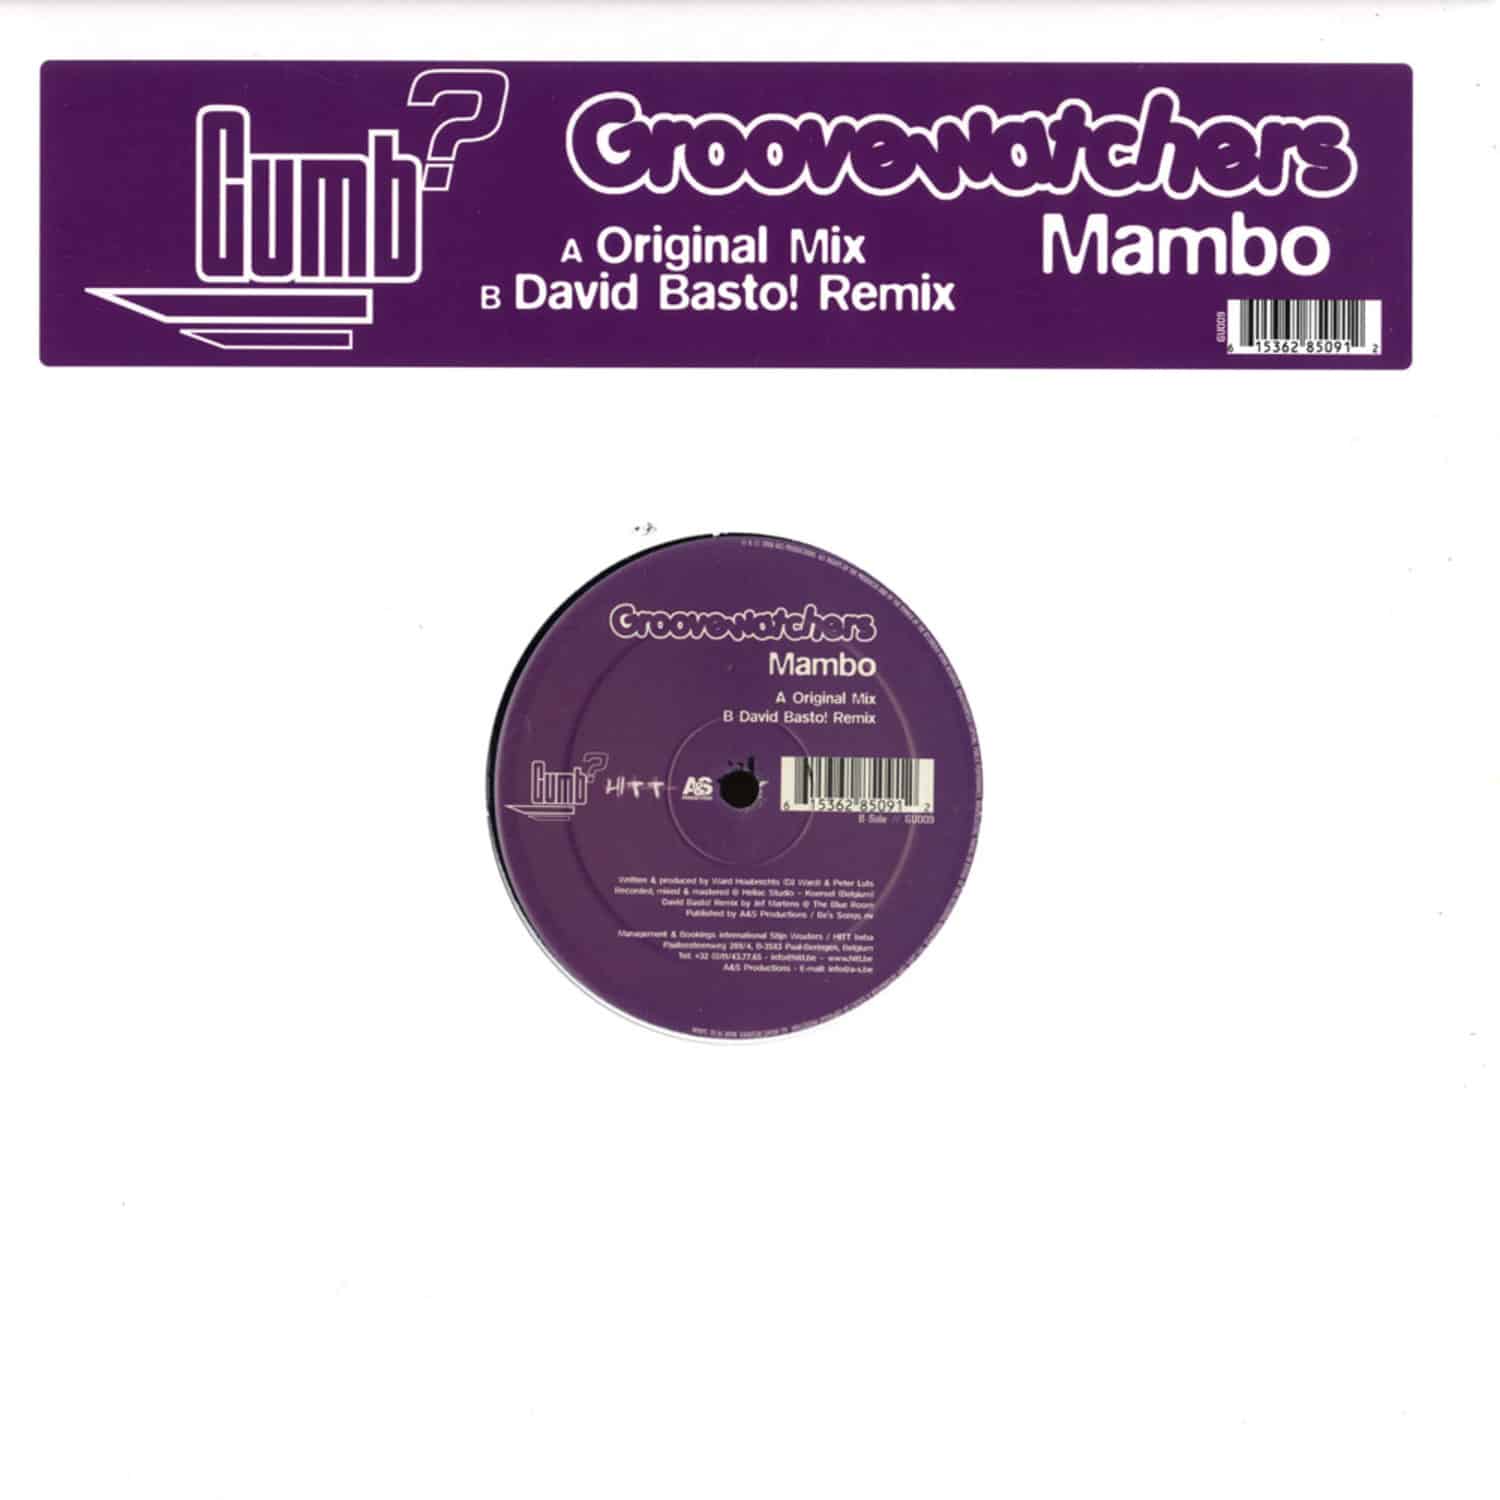 Groovewatchers - MAMBO